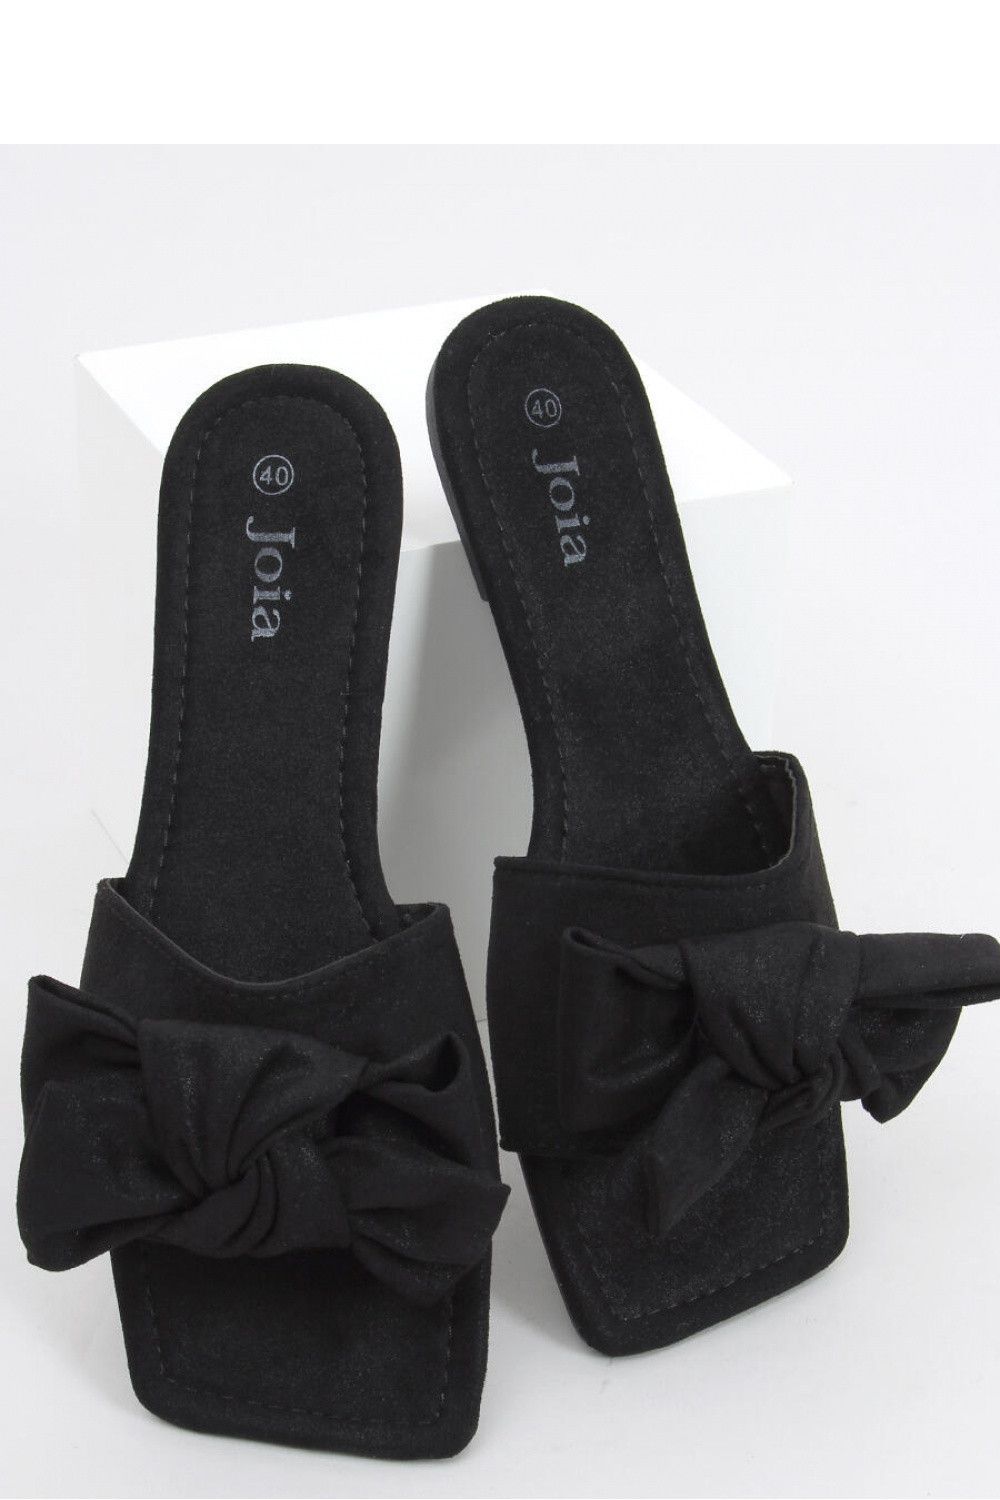 Dámské pantofle černá 37 model 18409077 - Inello